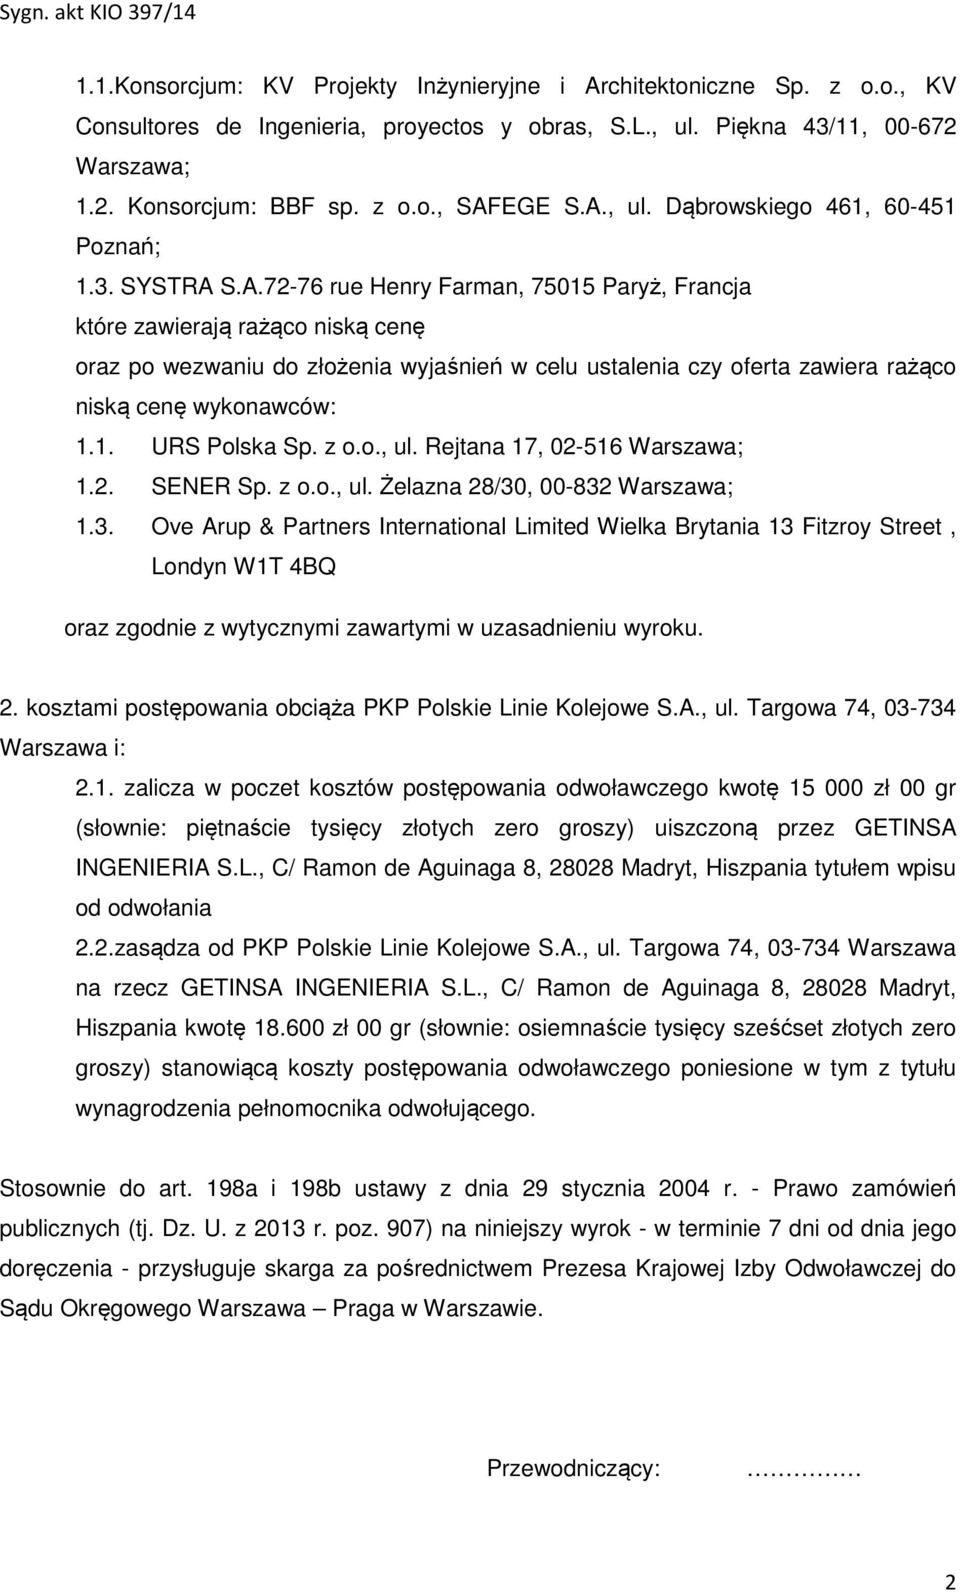 1. URS Polska Sp. z o.o., ul. Rejtana 17, 02-516 Warszawa; 1.2. SENER Sp. z o.o., ul. Żelazna 28/30